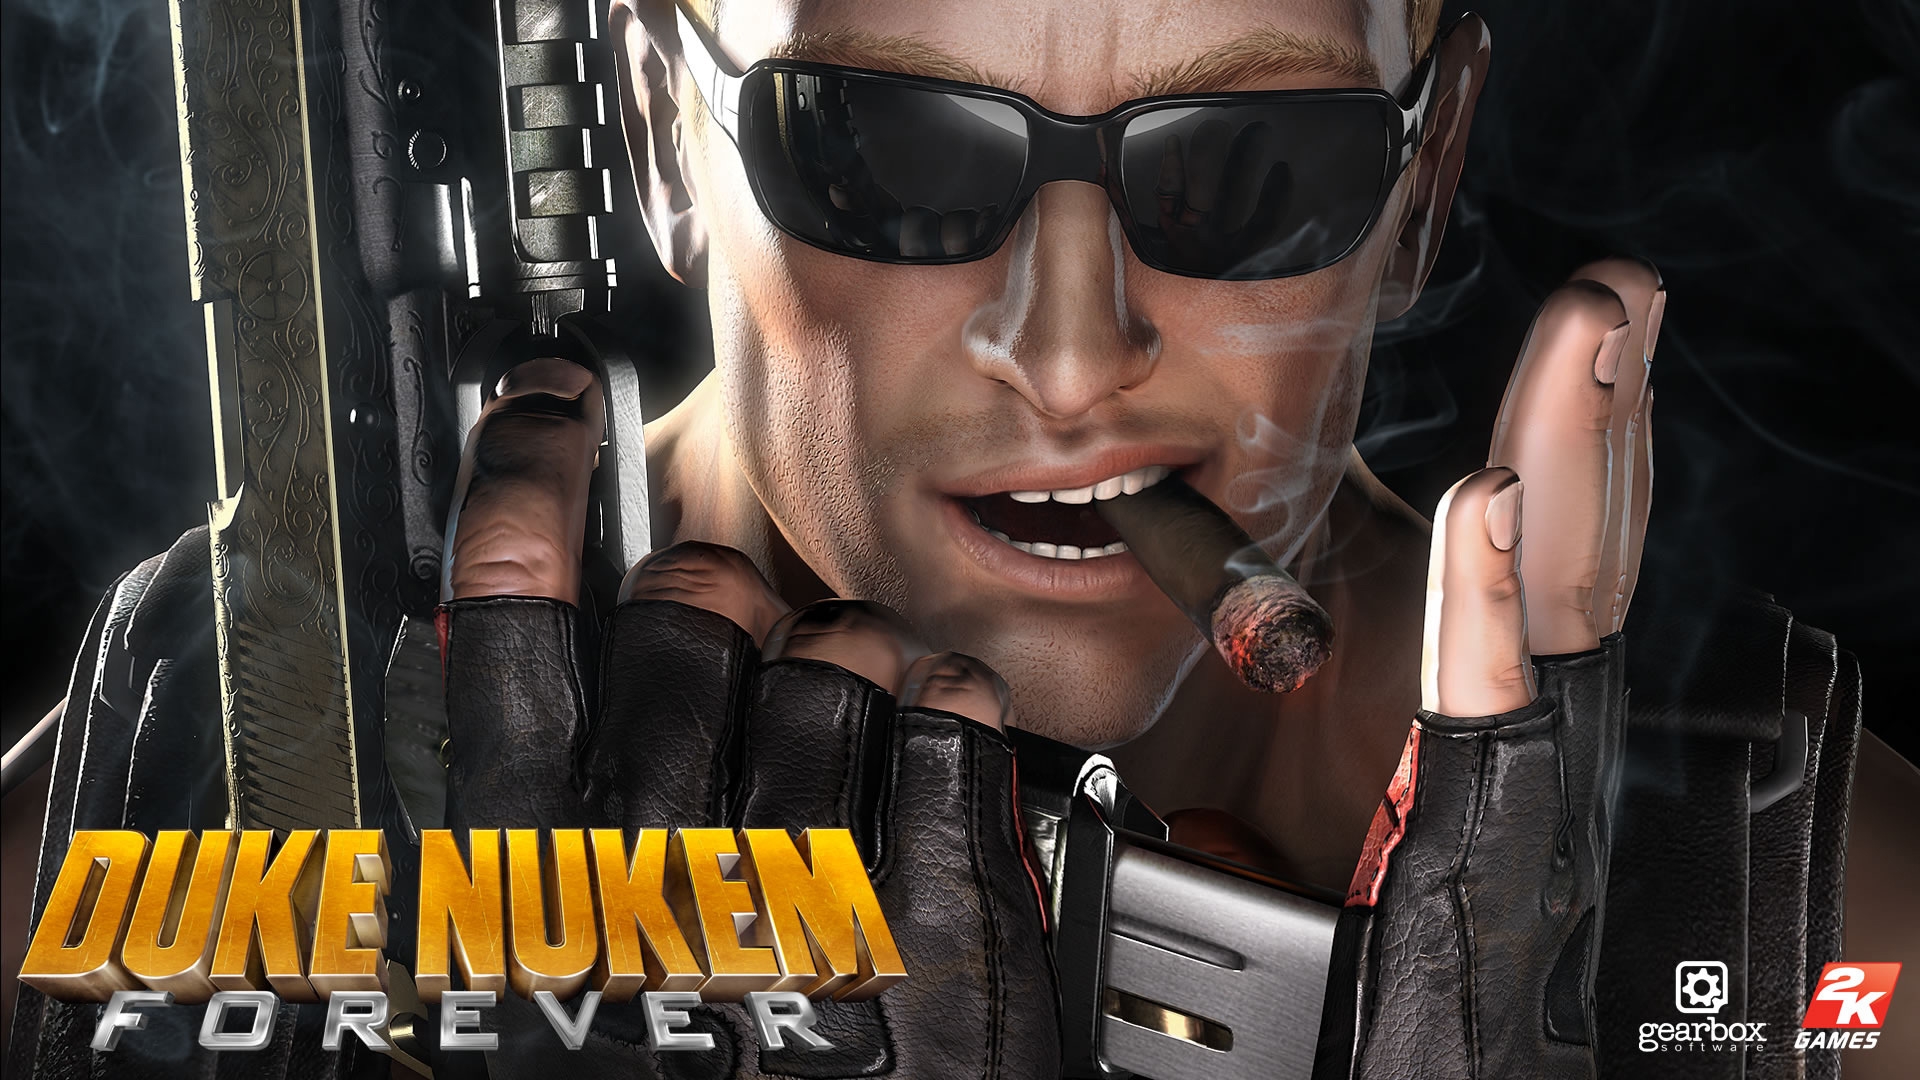 Duke Nukem Forever for 1920 x 1080 HDTV 1080p resolution